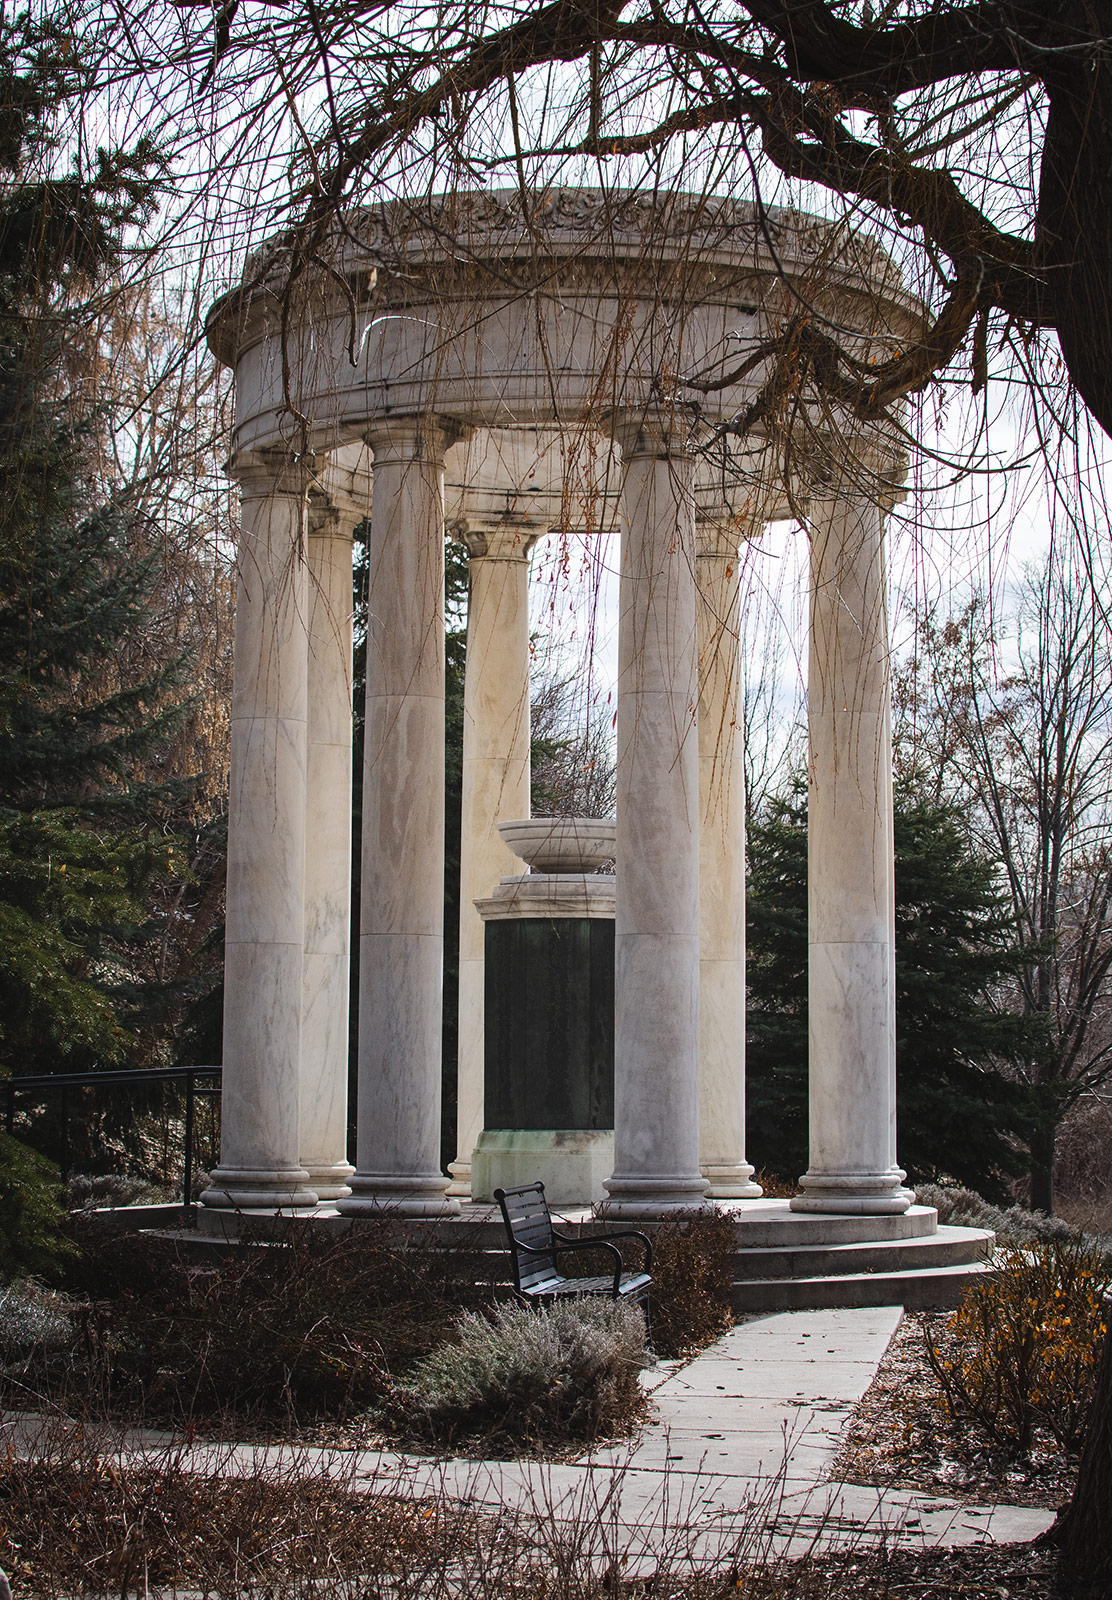 Pillared monument